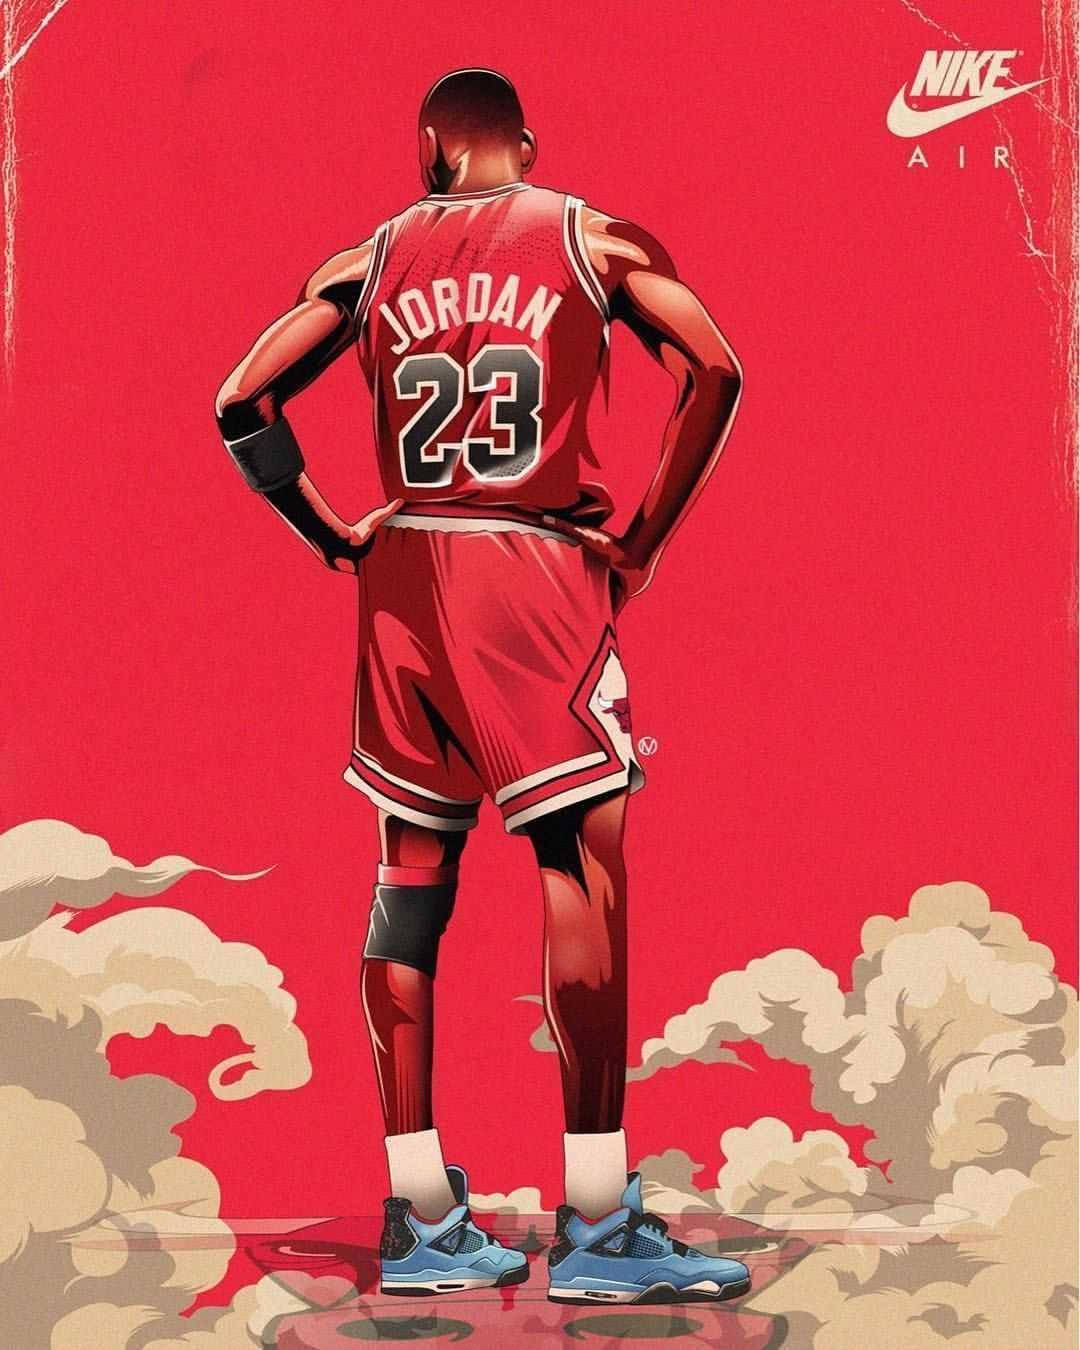 Cool Nike Air Michael Jordan Art Background